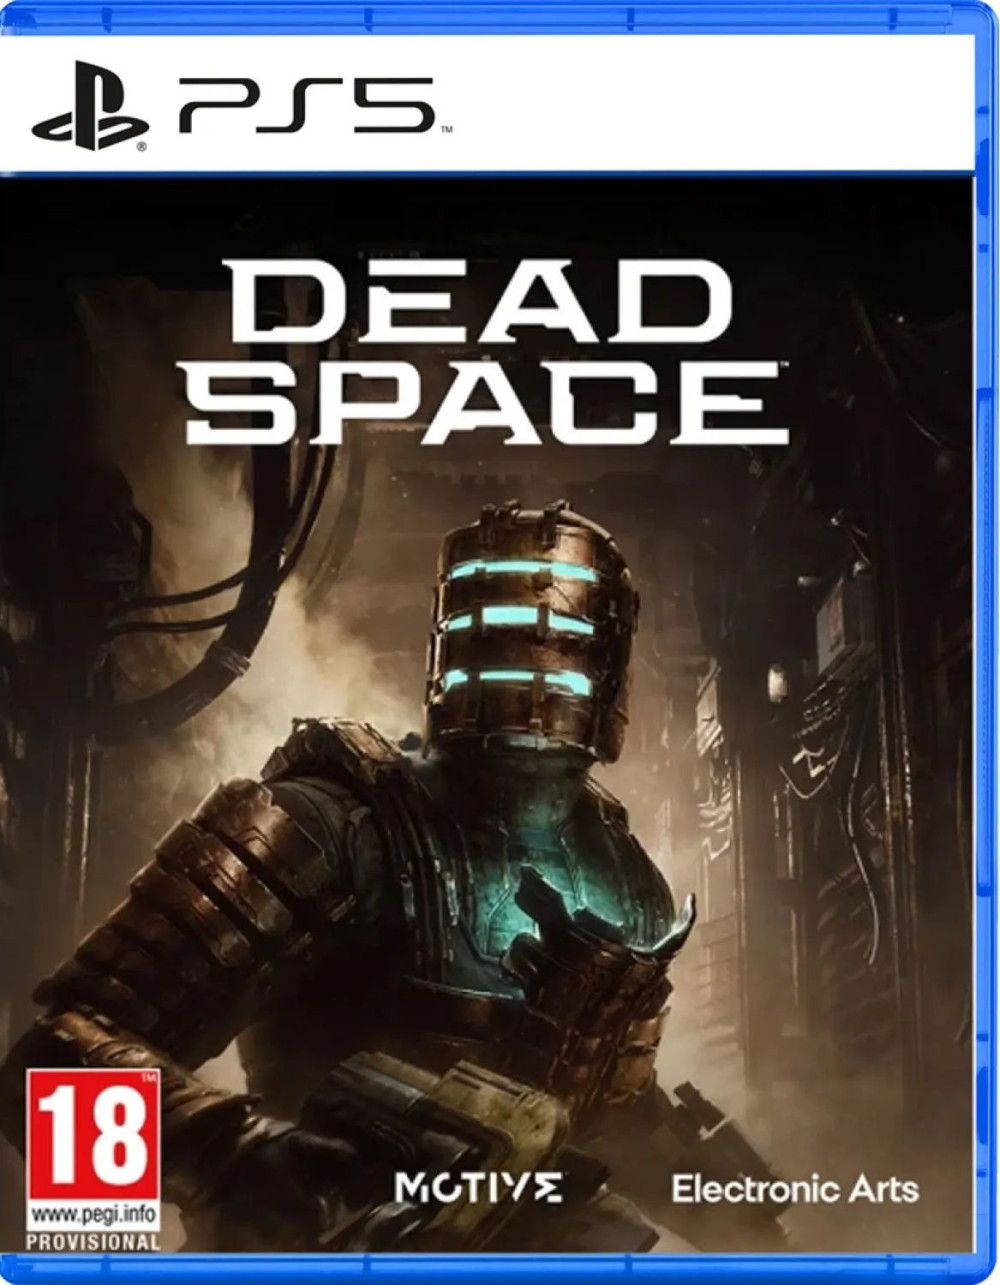 Набор Dead Space Remake [PS5, английская версия] + Steelrising [PS5, русские субтитры]